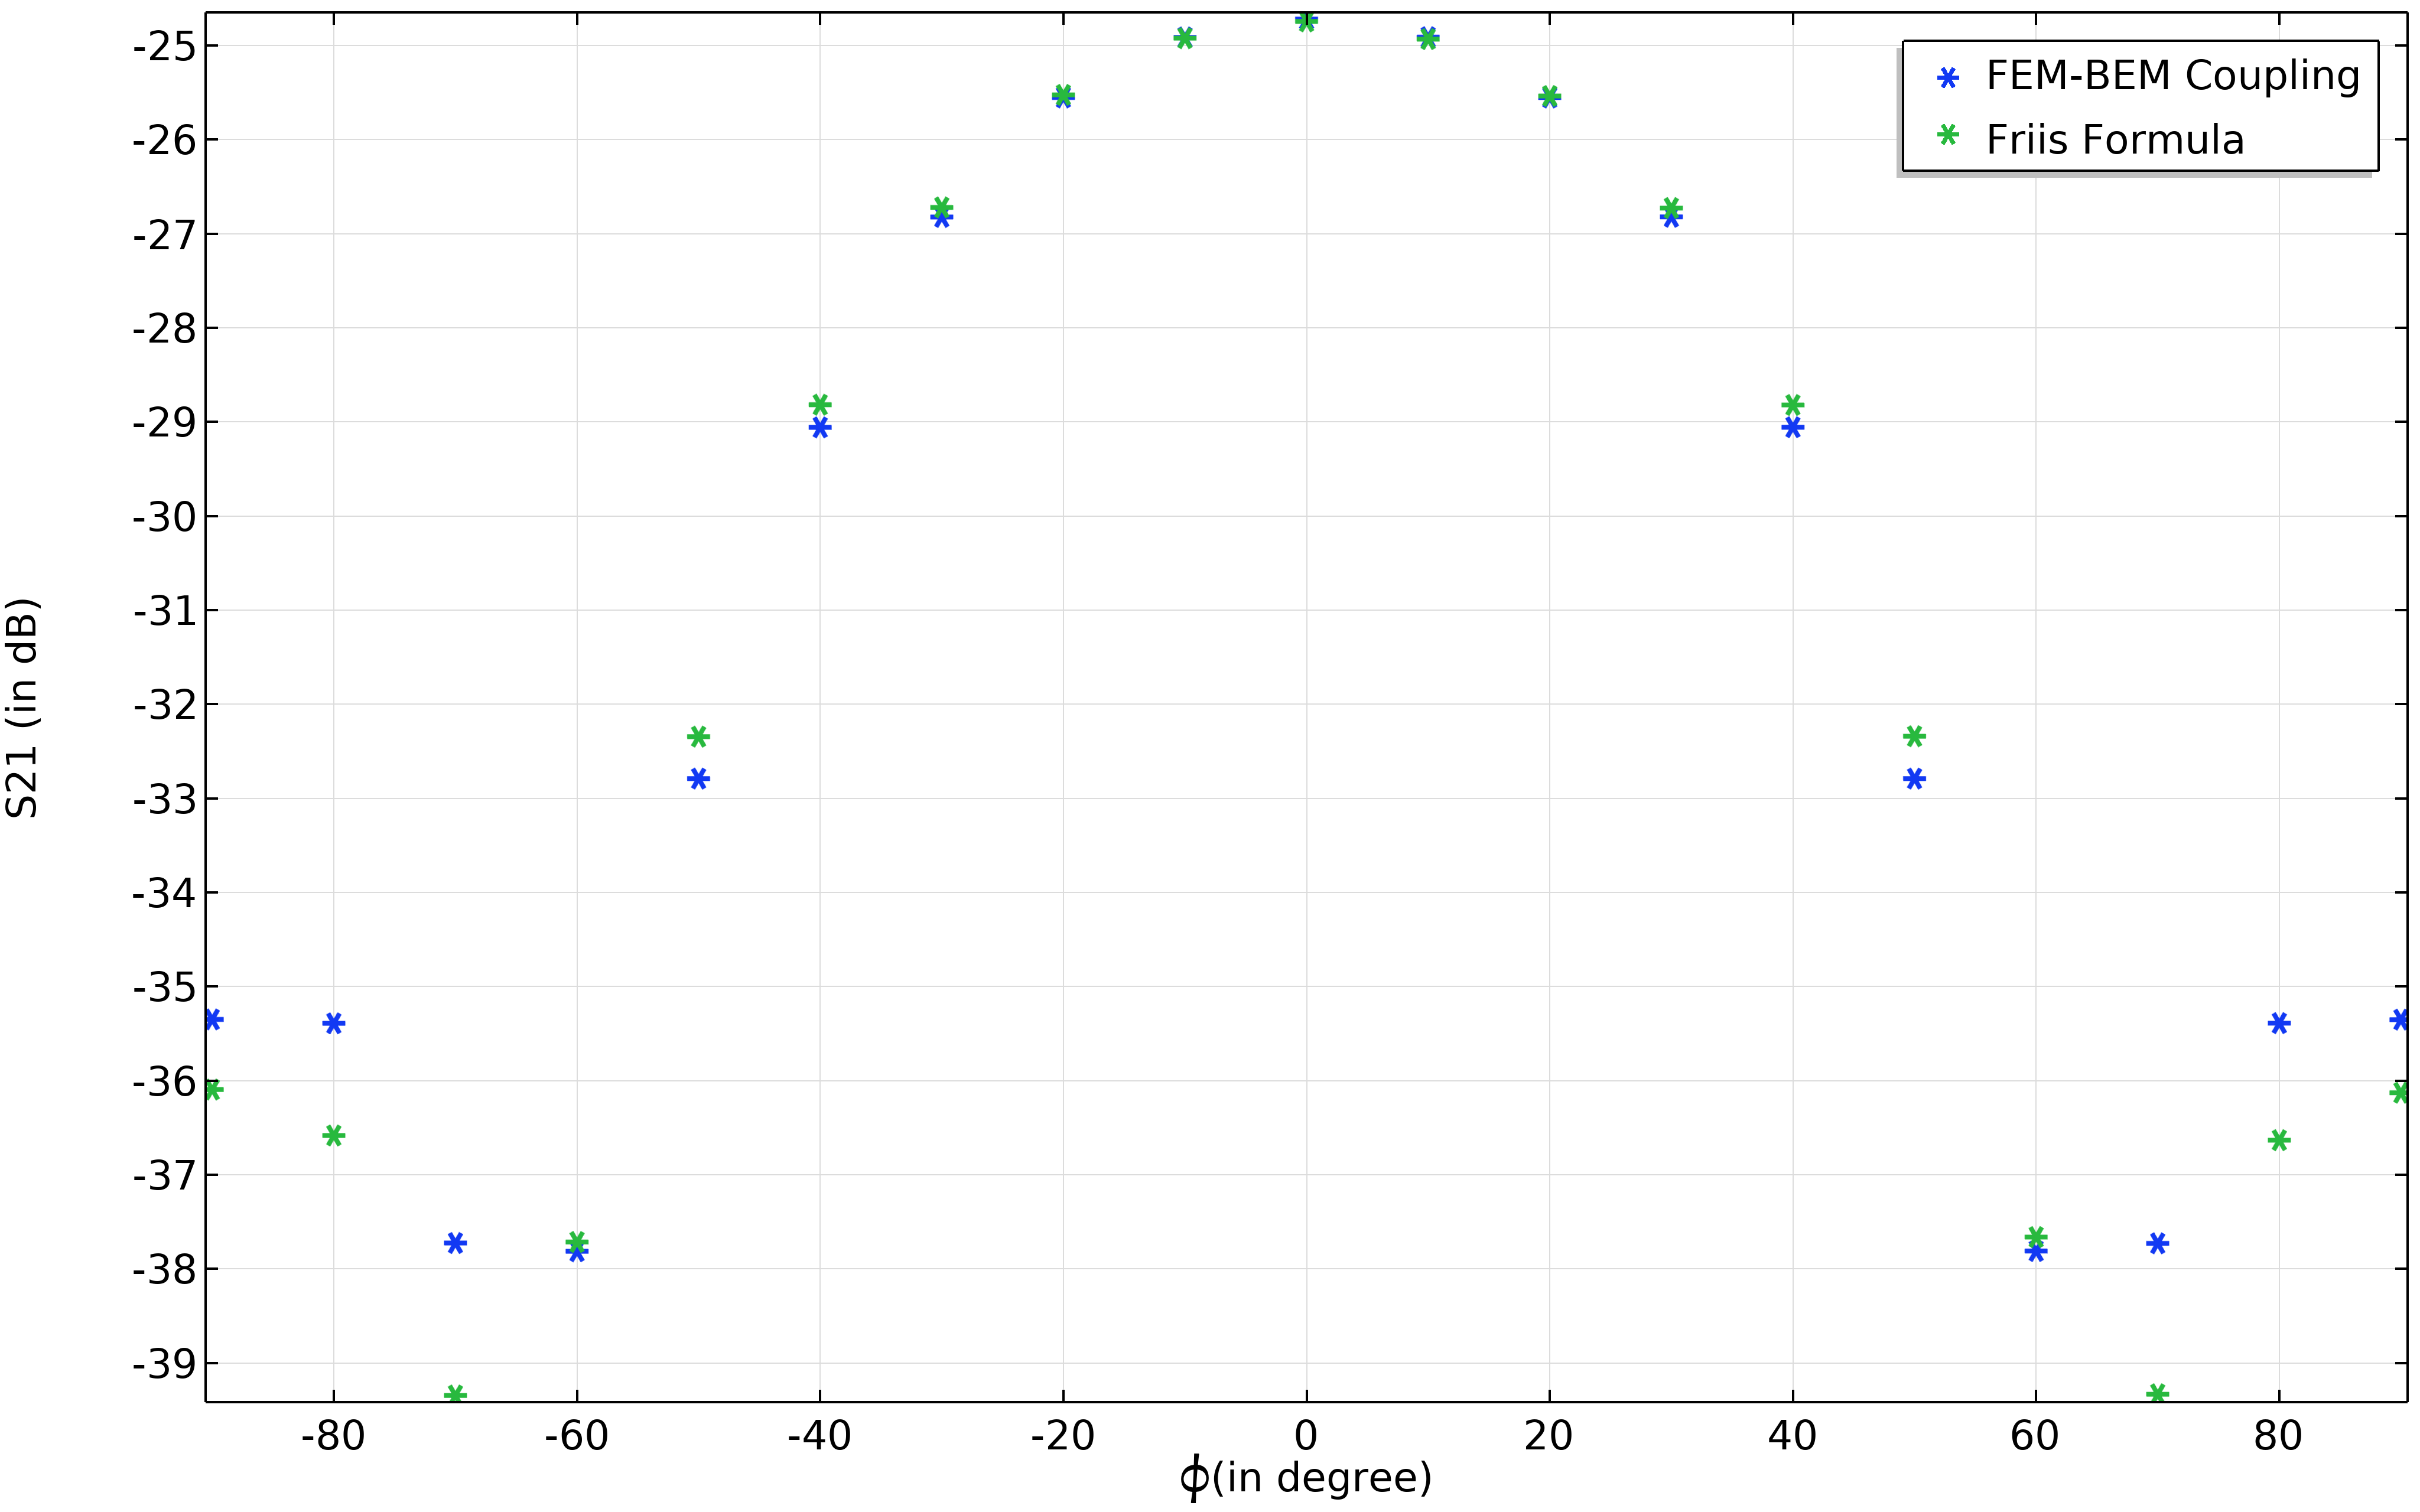 一维图，x 轴为 phi（单位：度），y 轴为 S21（单位：dB）。关键点显示，蓝色星号和绿色星号分别代表 FEM-BEM 耦合和 Friis 公式。